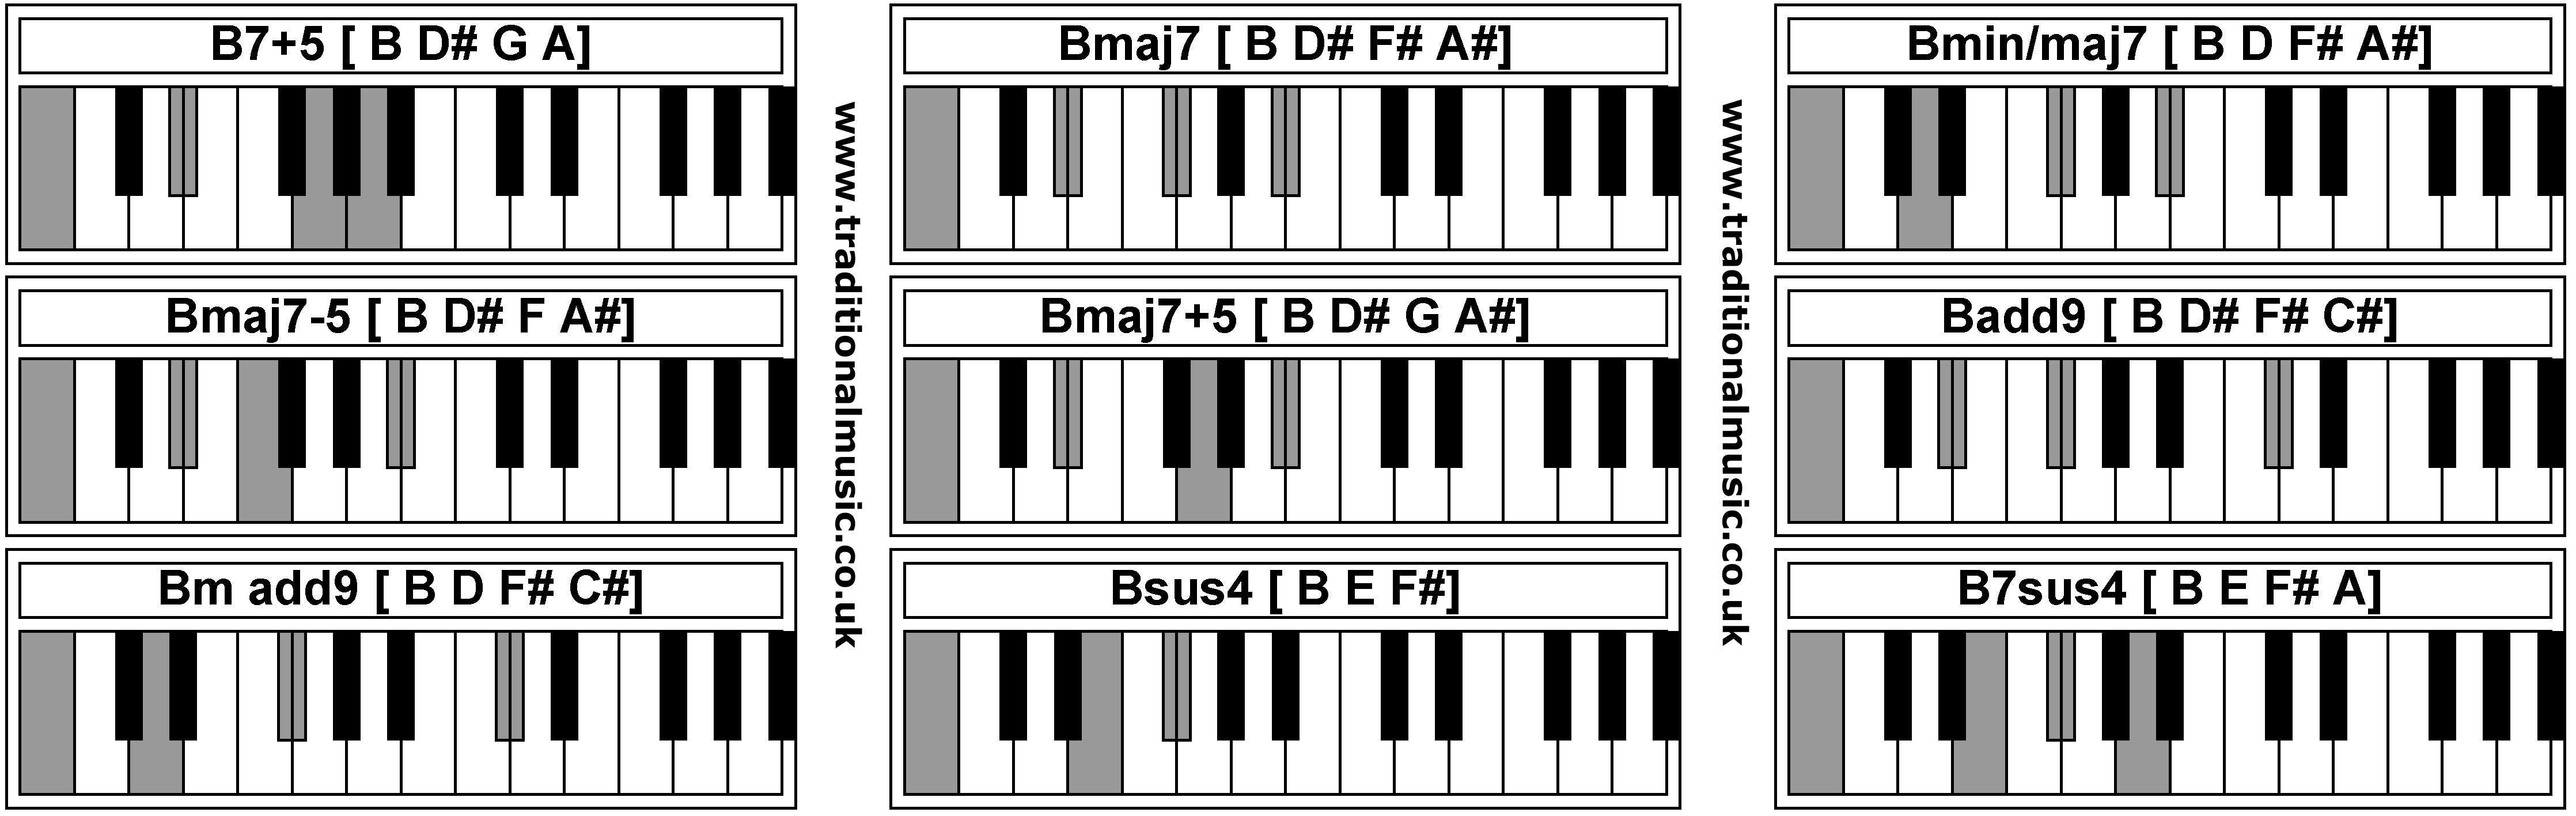 Piano Chords - B7+5  Bmaj7  Bmin/maj7  Bmaj7-5  Bmaj7+5  Badd9  Bm add9  Bsus4  B7sus4 